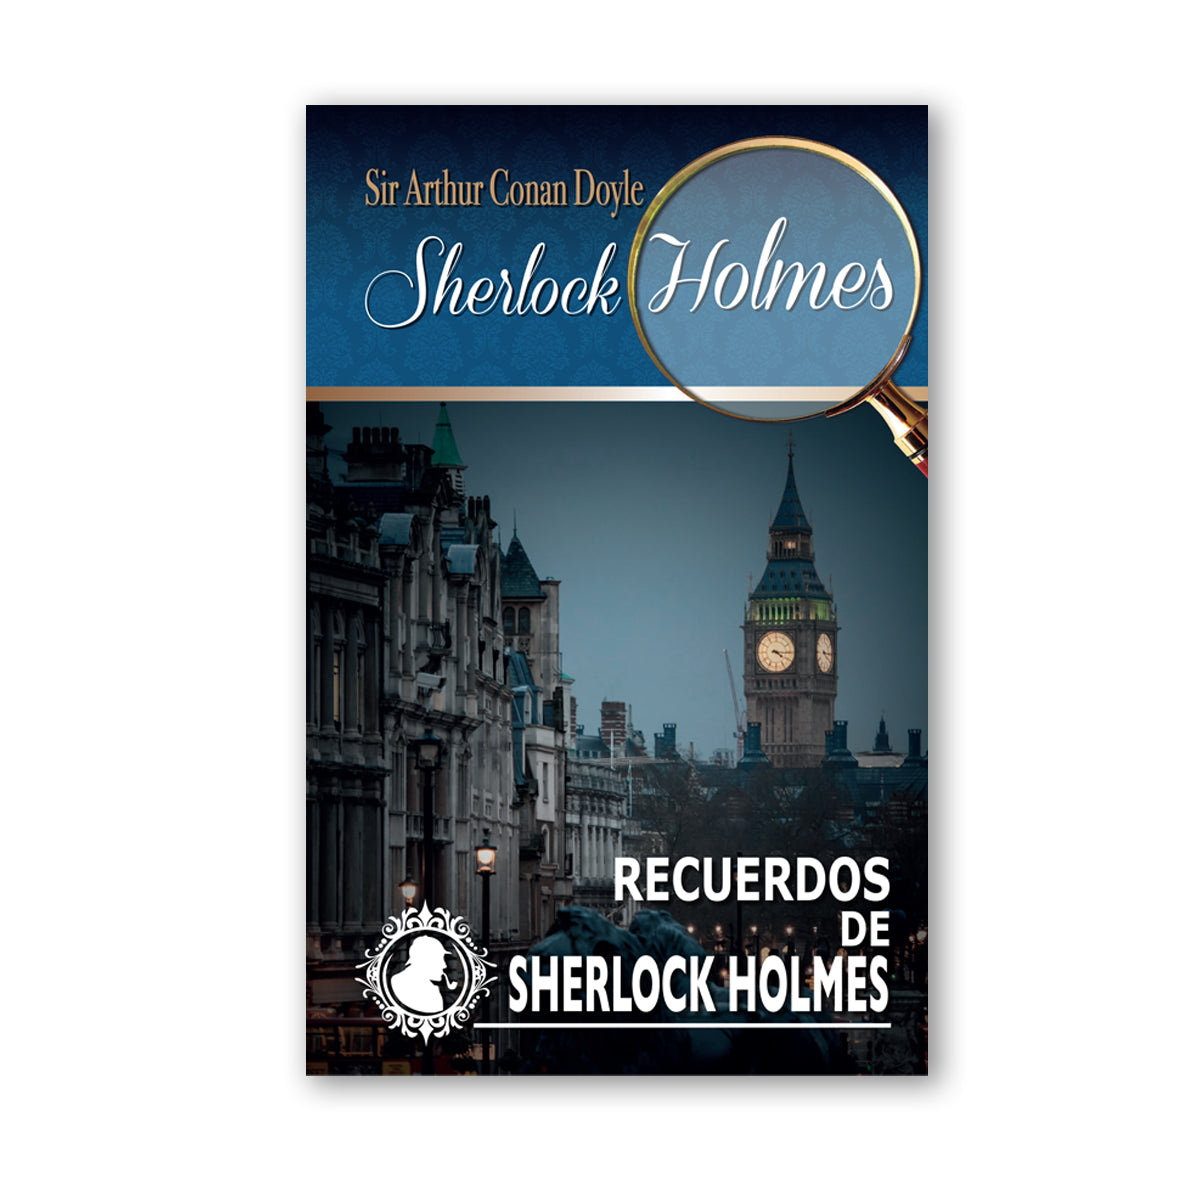 Colección Sherlock Holmes "Recuerdos de Sherlock Holmes"